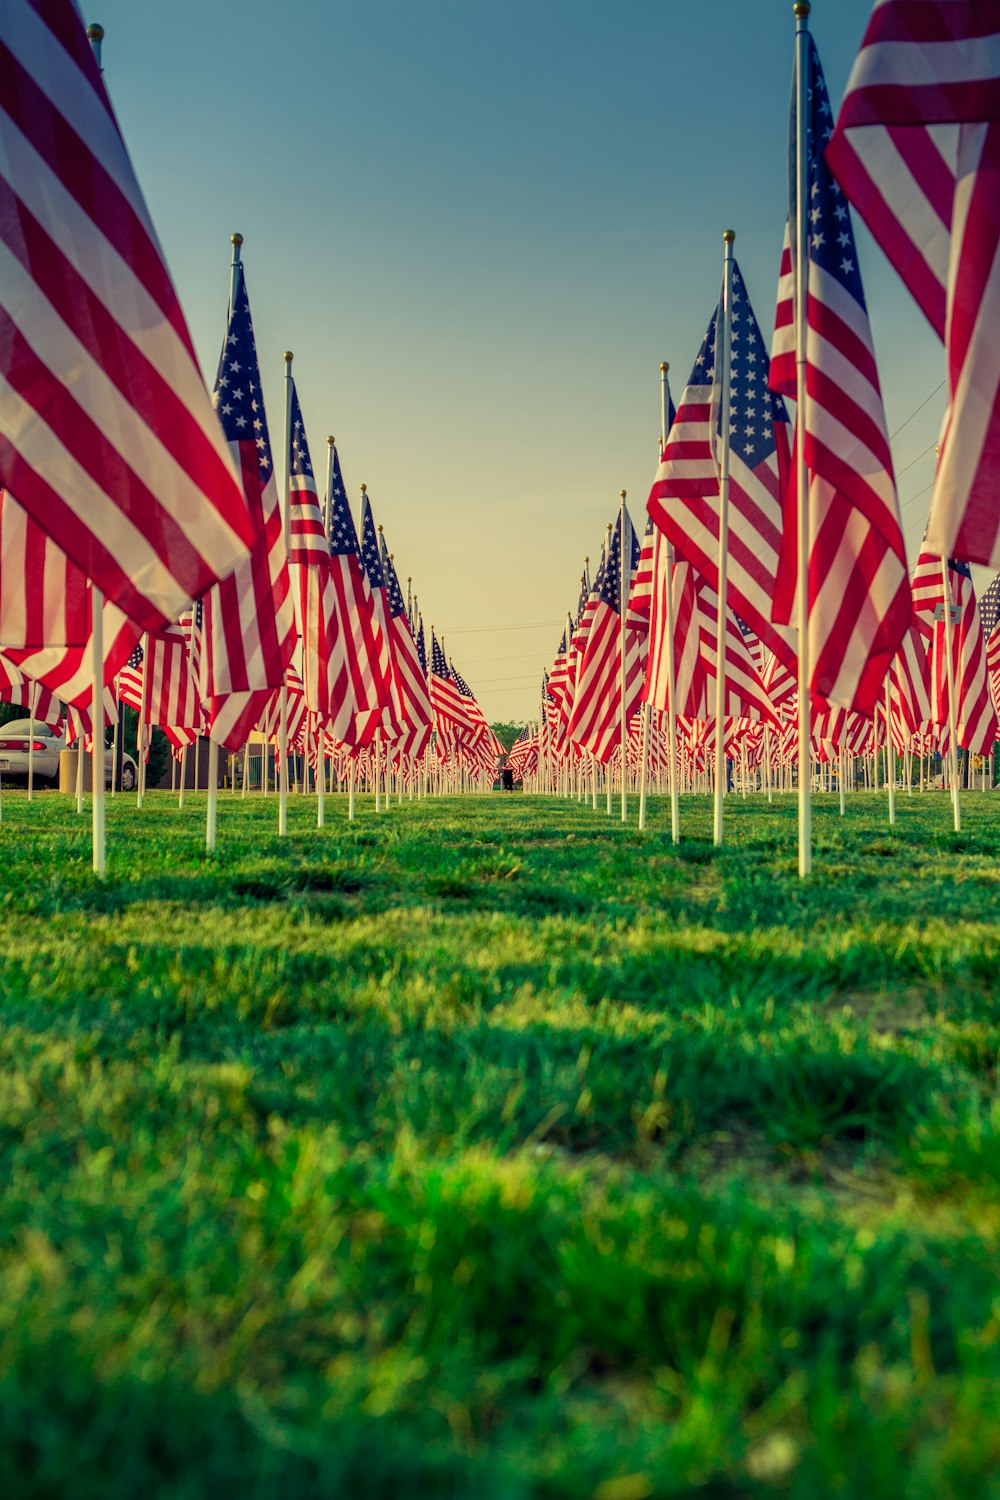 États-Unis un drapeaux sur un champ d’herbe verte pendant la journée